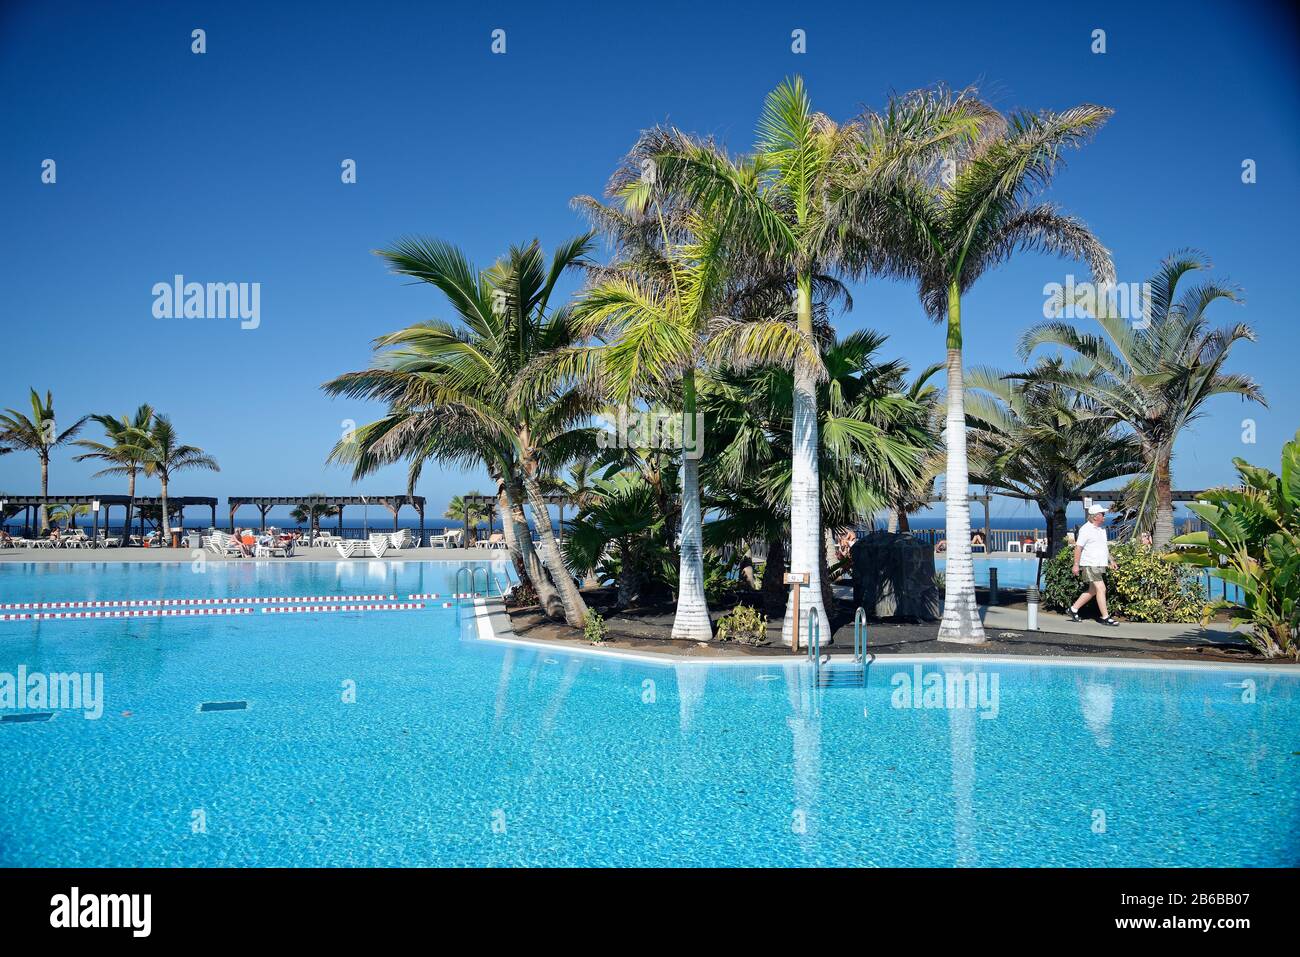 Senior man walking between swimming pools at holiday resort. Palm trees and swimming pools at hotel. Stock Photo